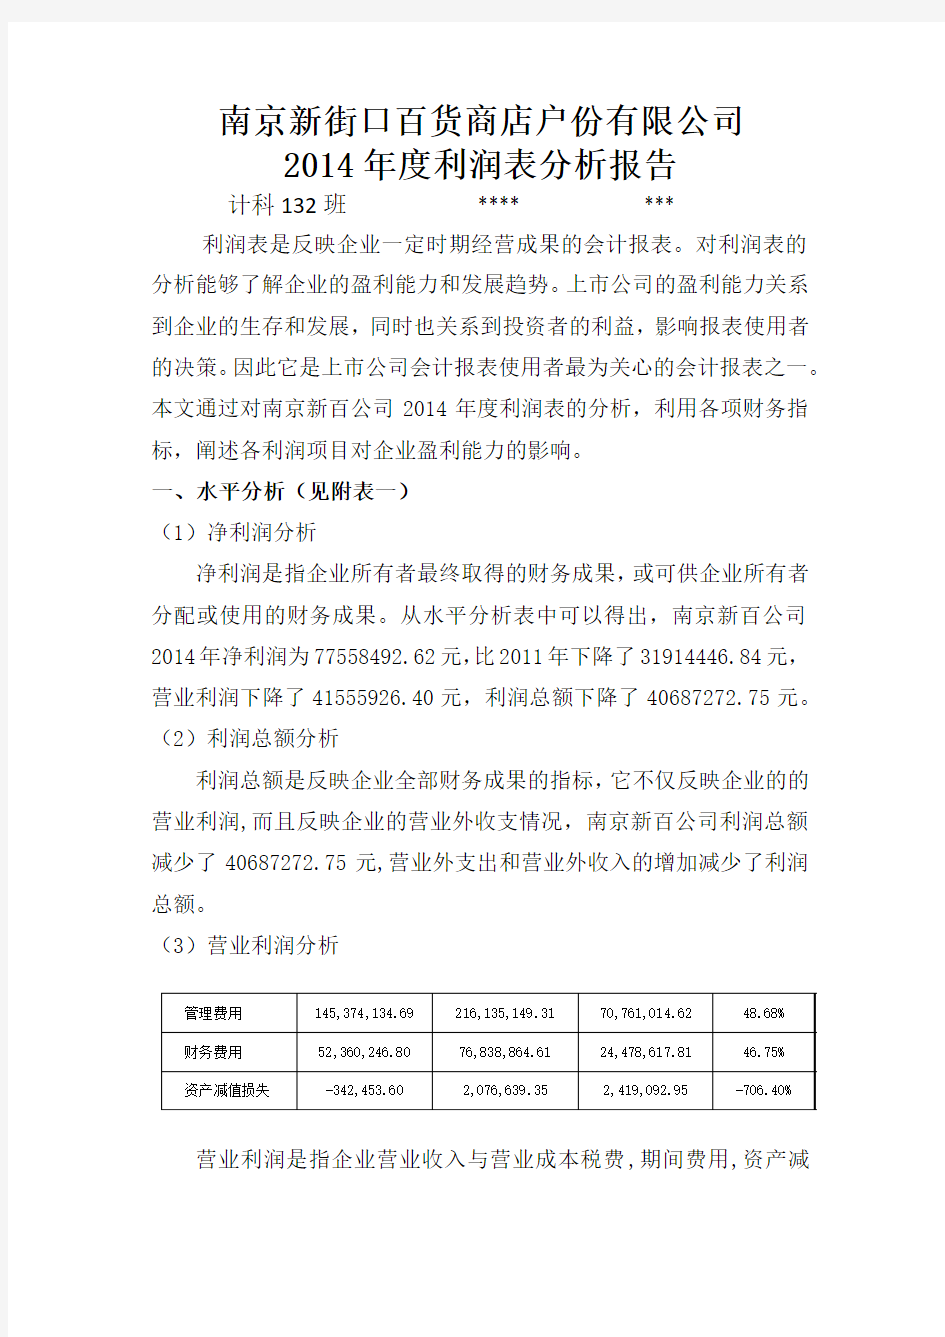 南京新百2014年度利润表分析报告